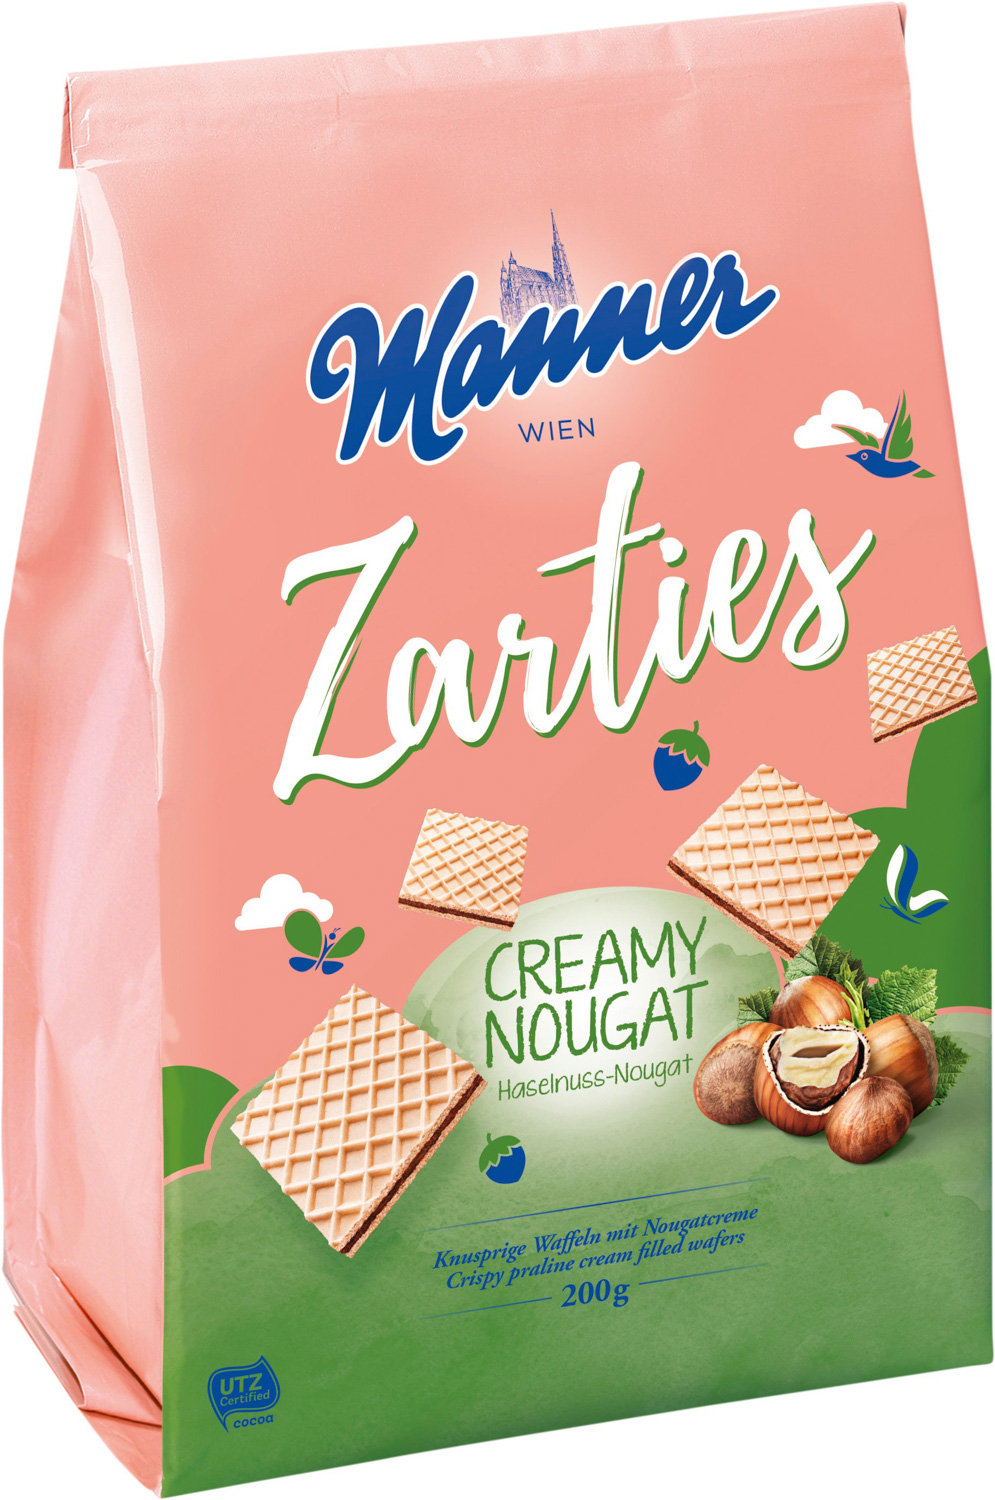 Manner Zarties Creamy Nougat 200G